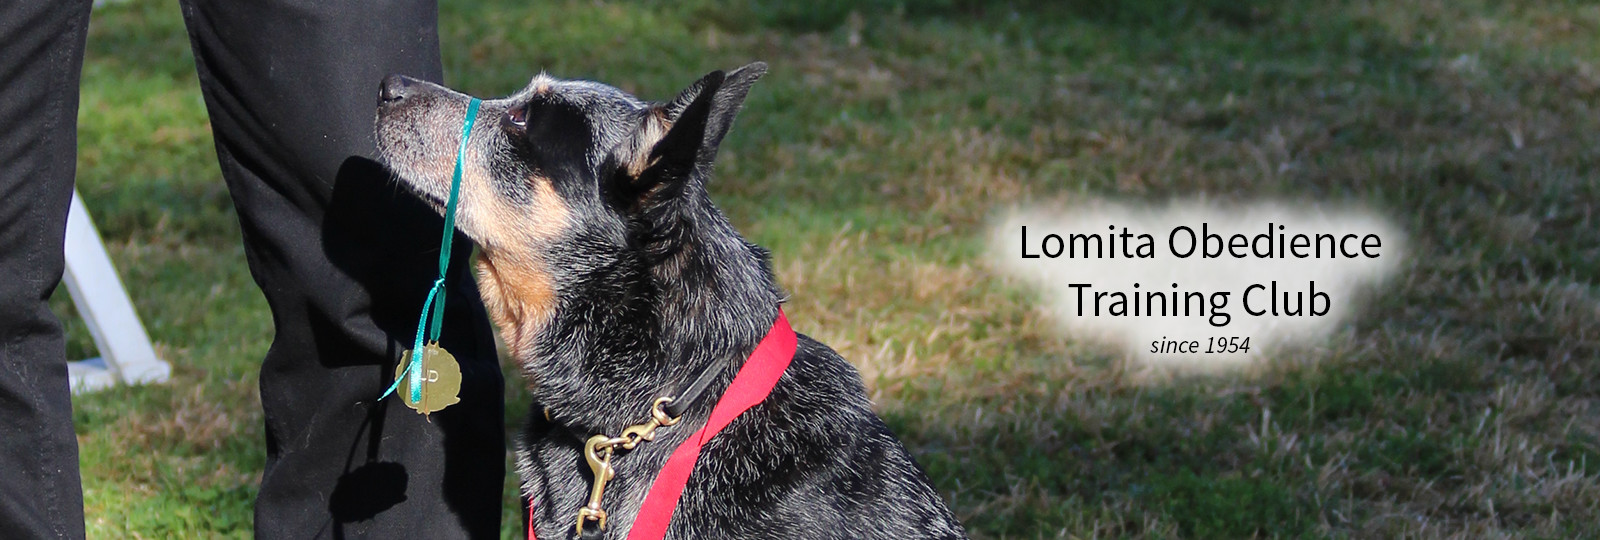 Lomita Dog Training - cattle dog